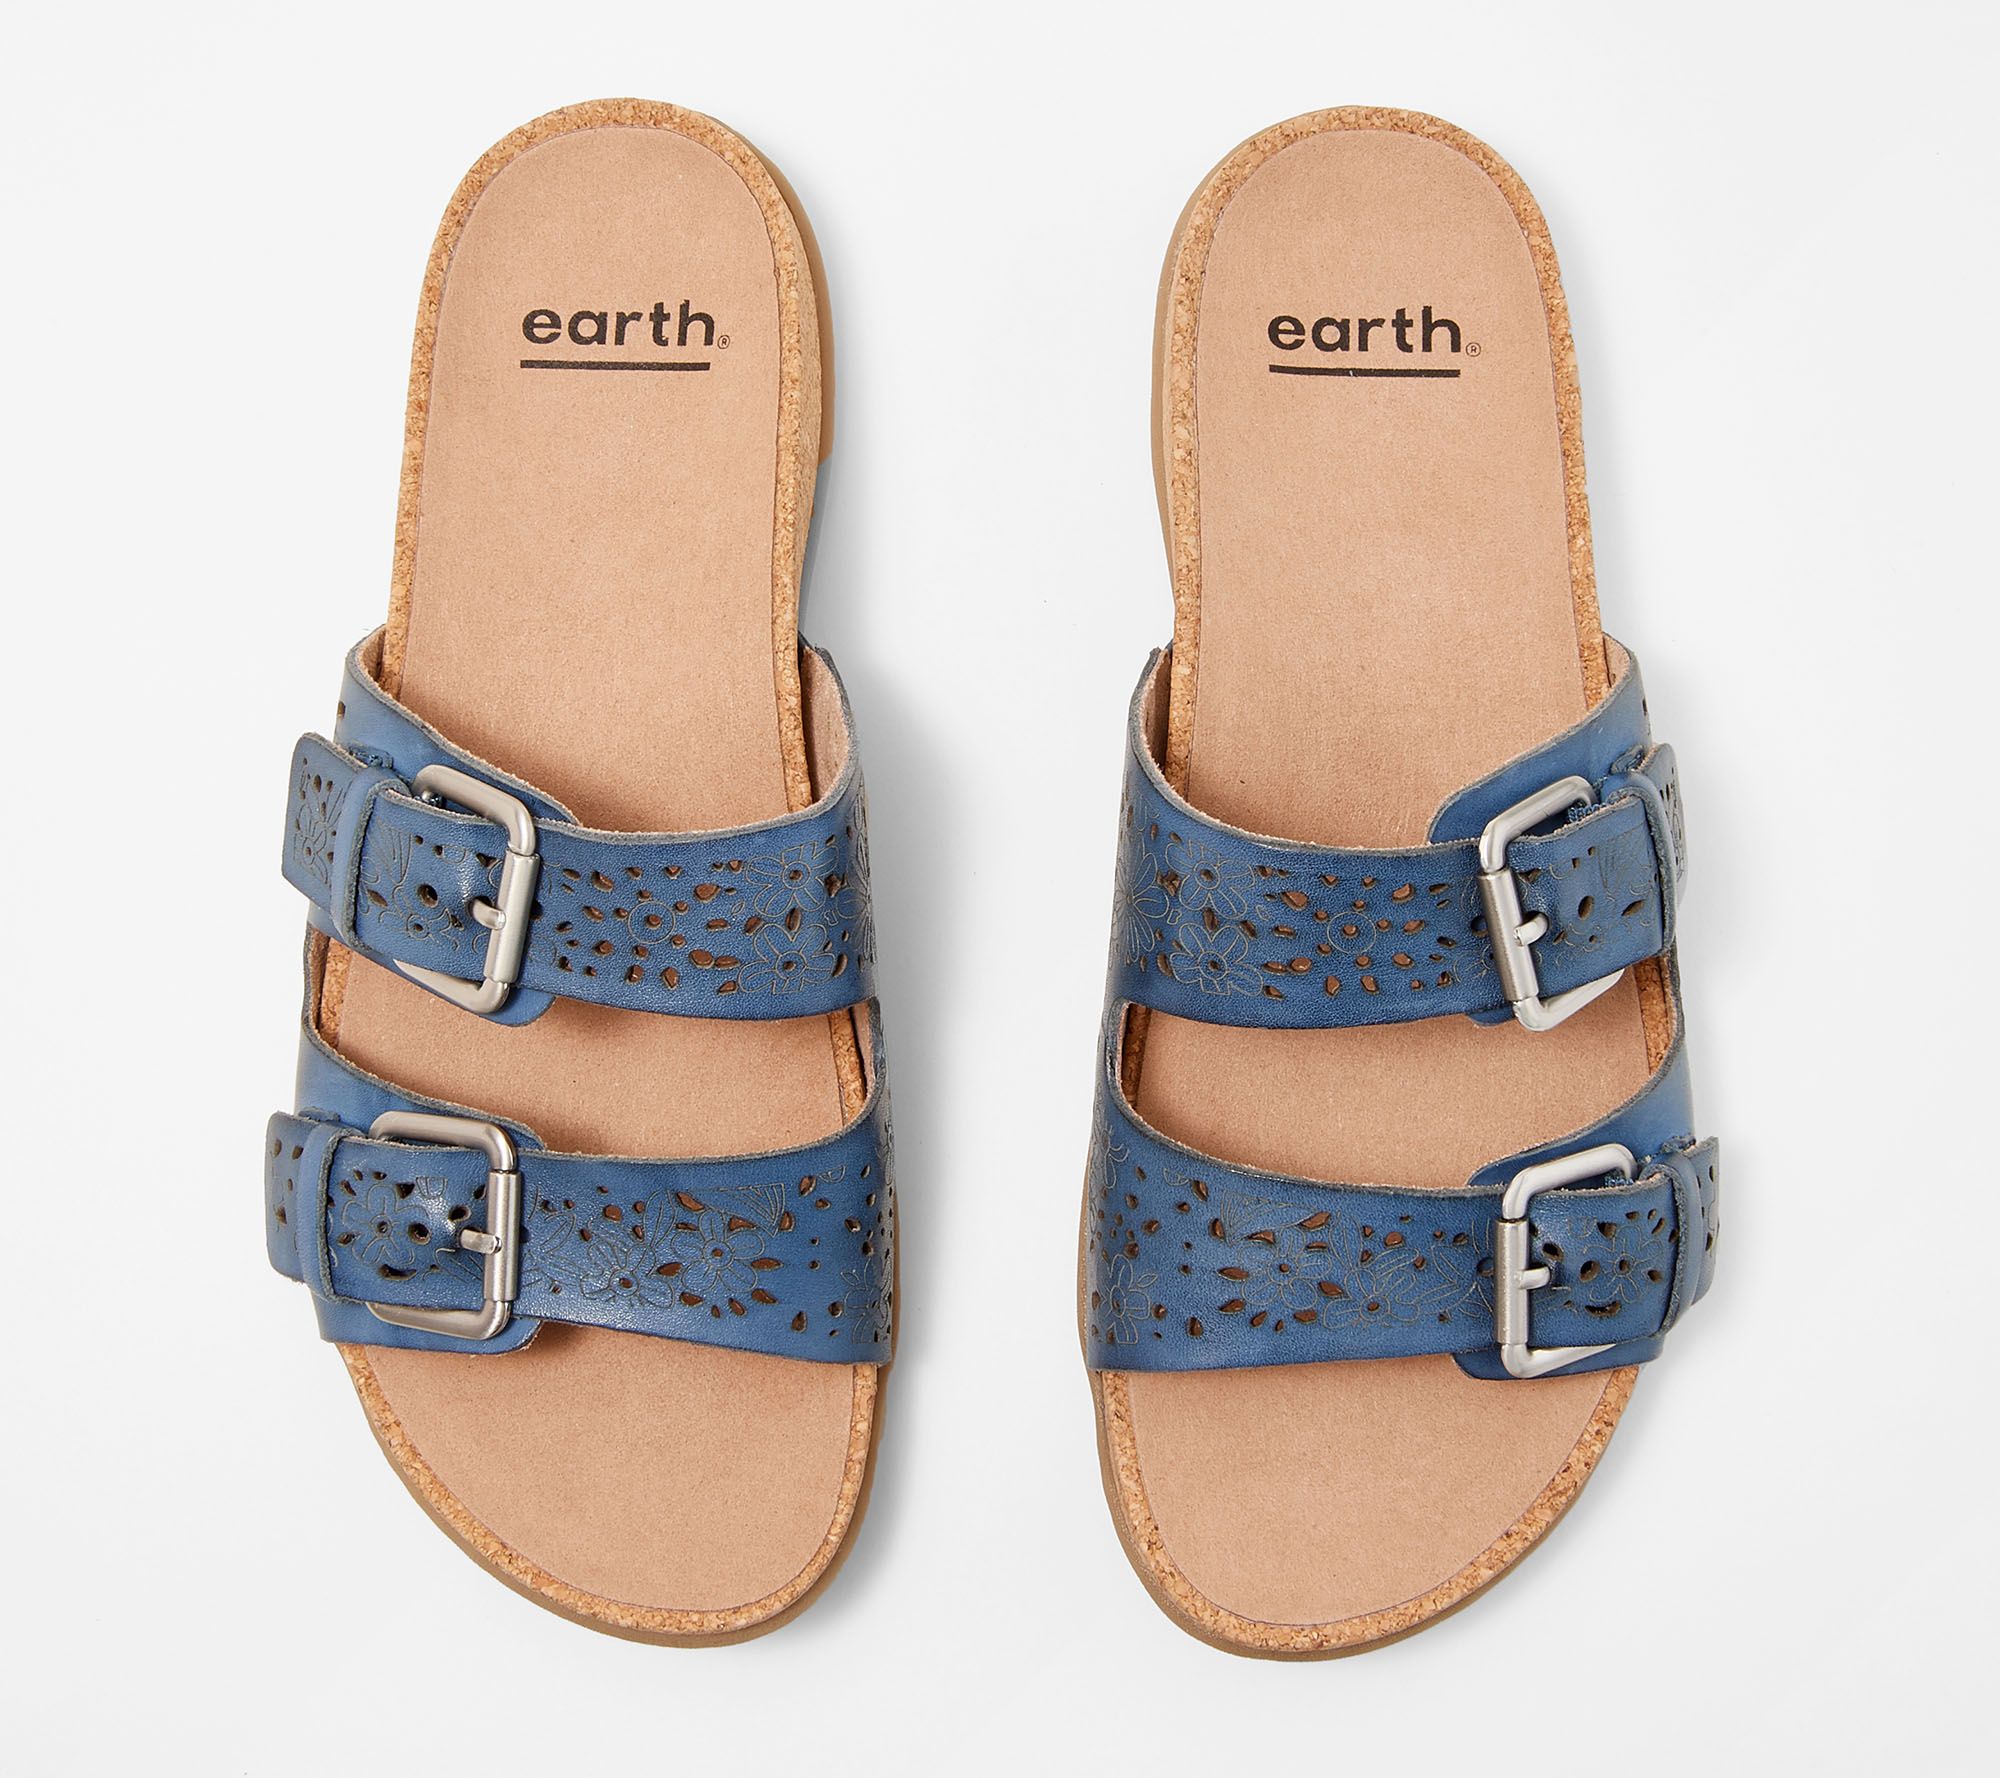 earth sandals qvc